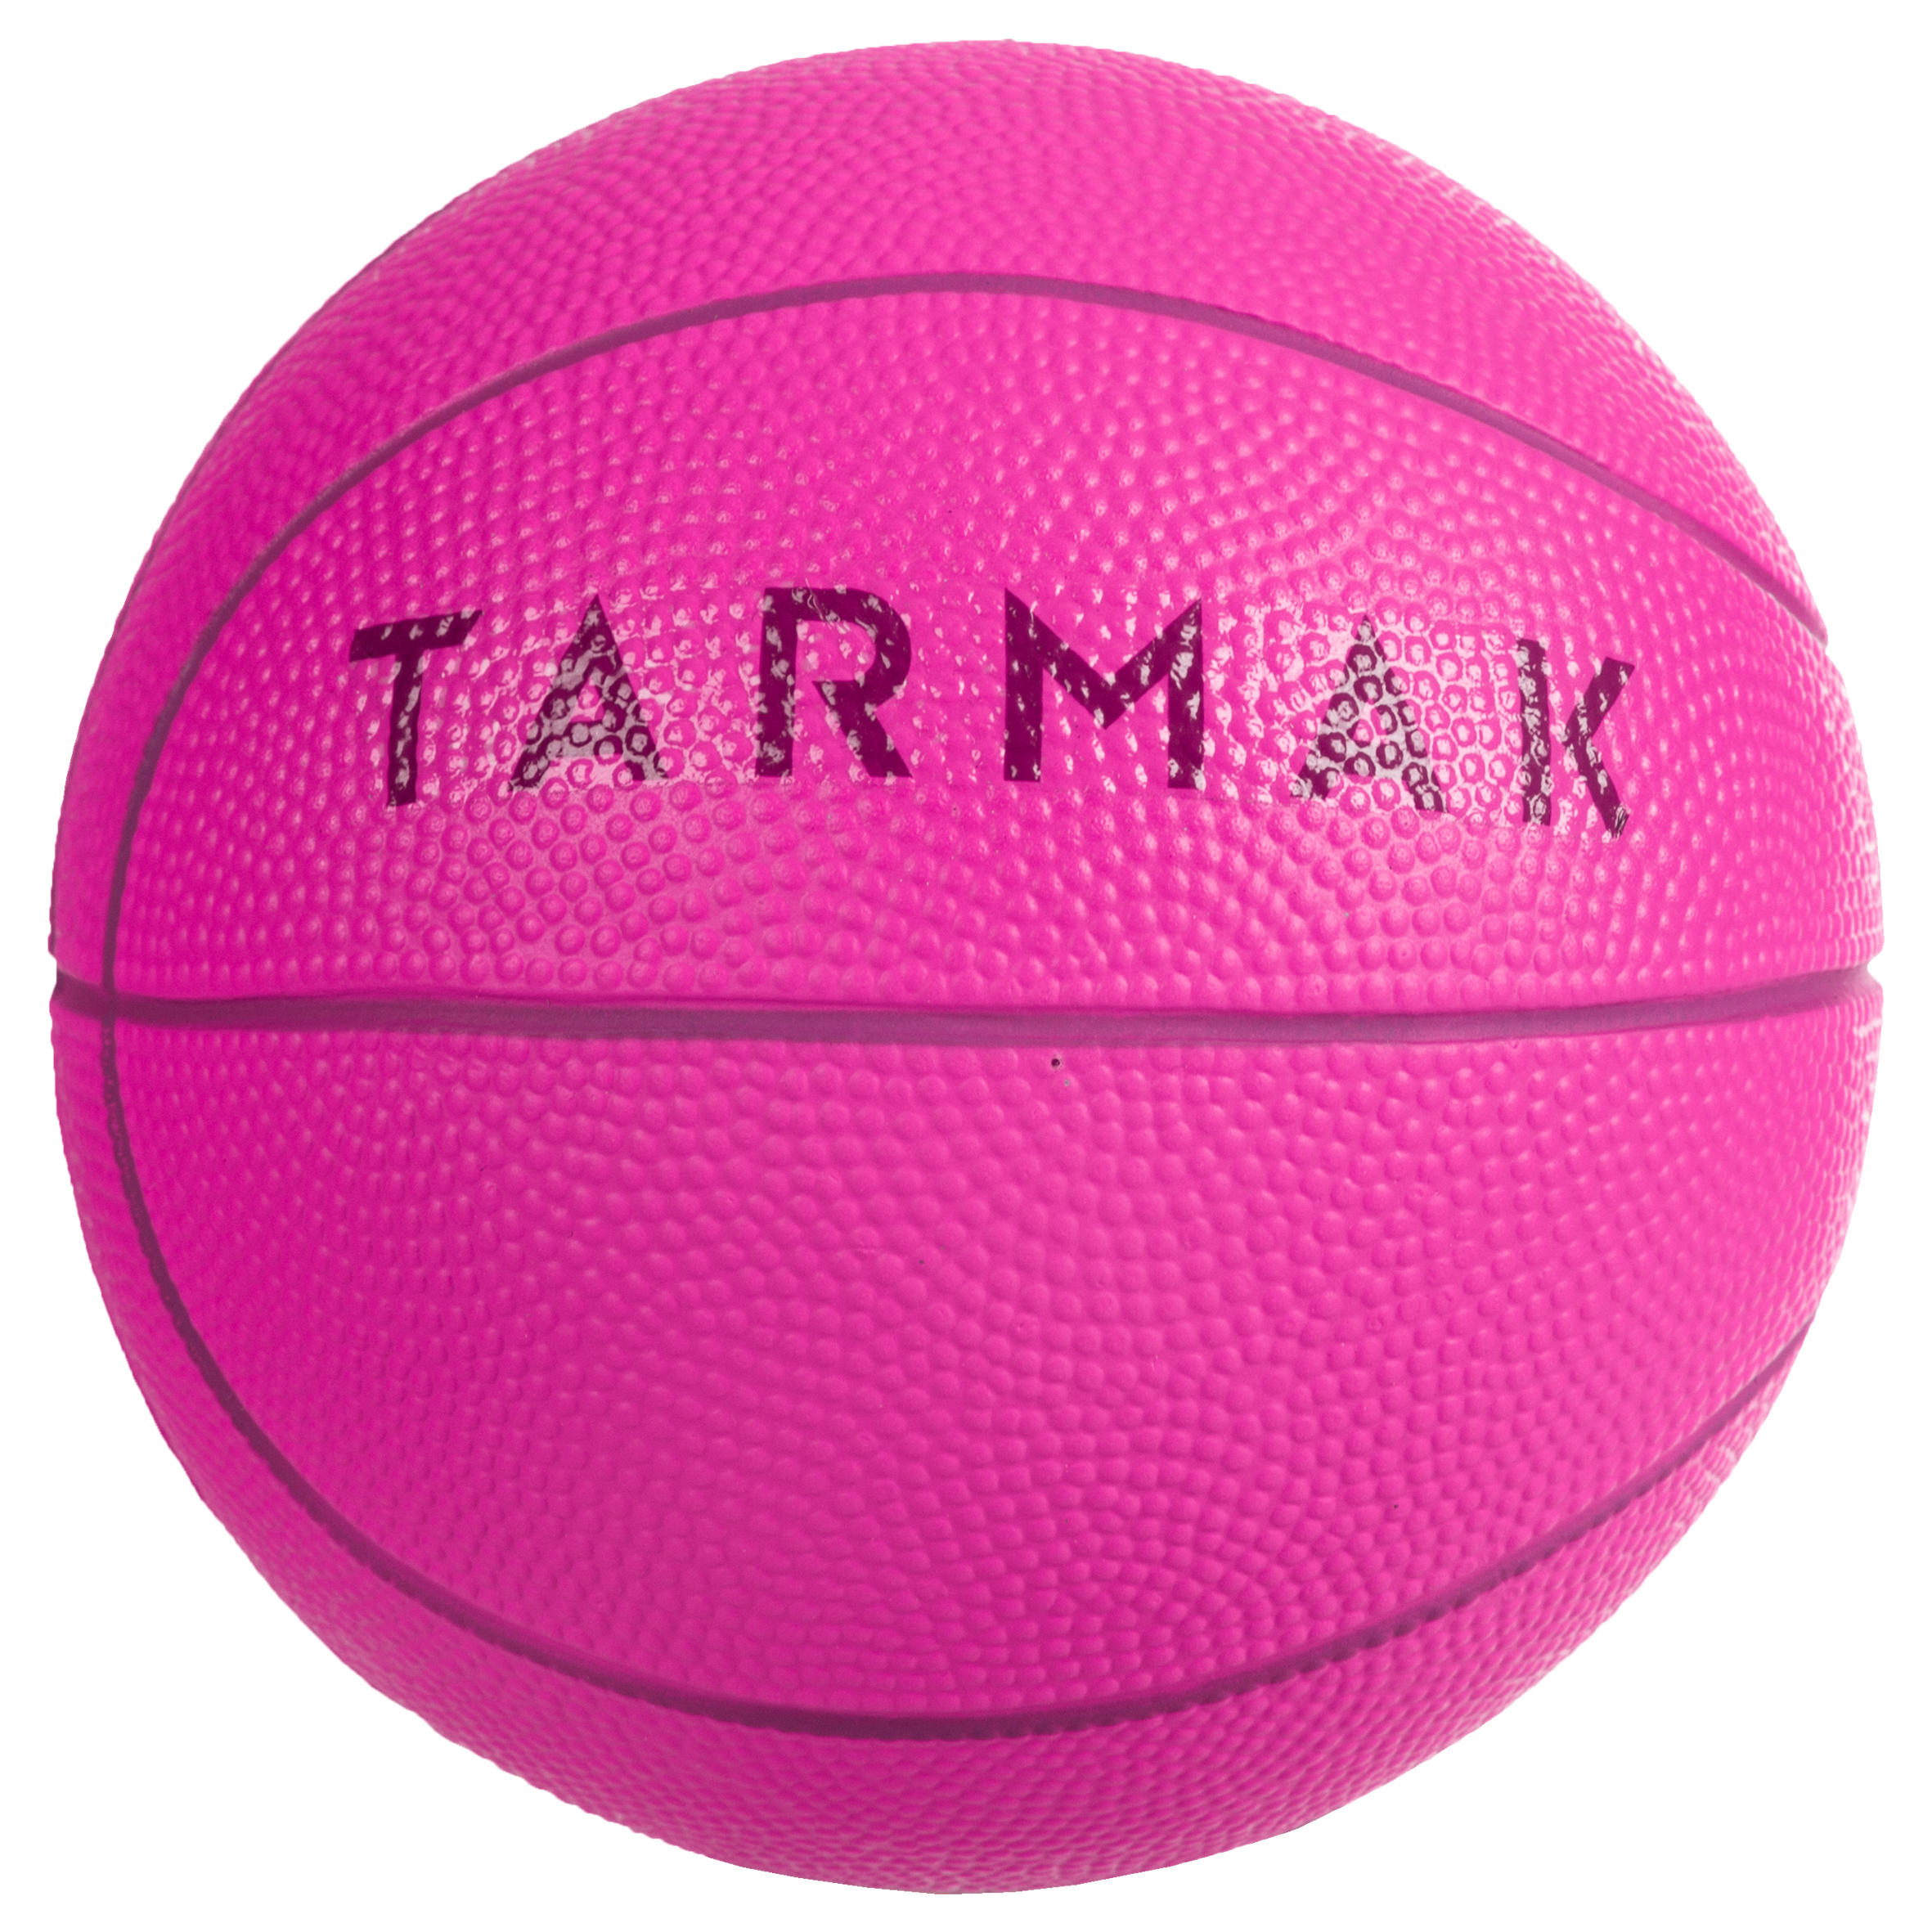 TARMAK K100 Basketball - PinkKids' Mini Foam Basketball Size 1 (Up to 4 Years)